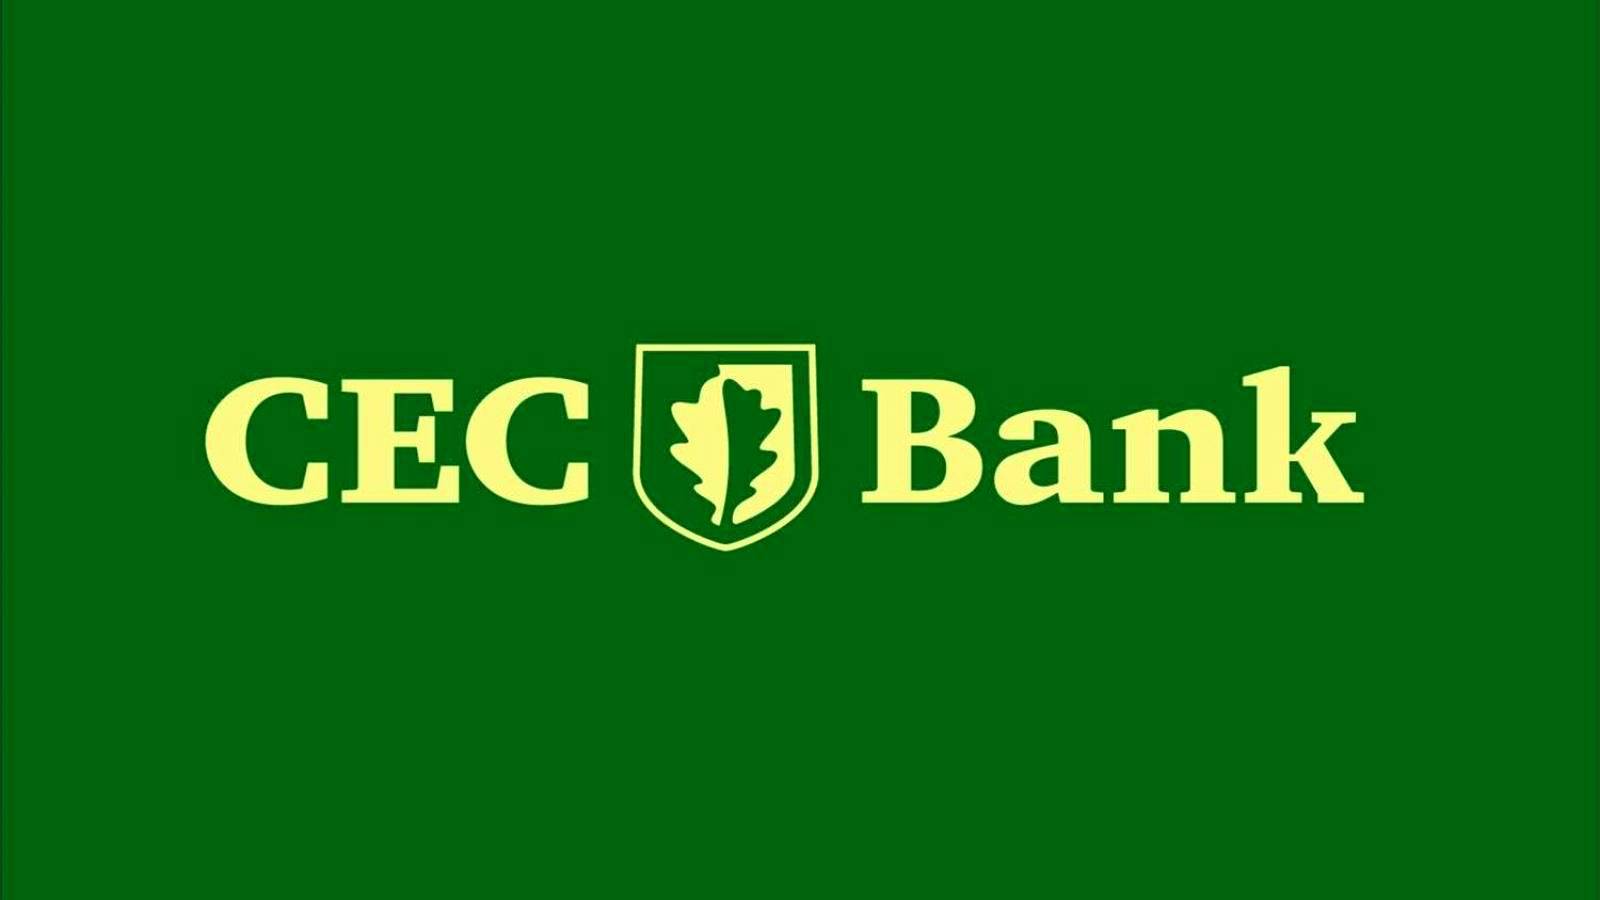 PILNE Ogłoszenie banku CEC, które klienci muszą wiedzieć już teraz